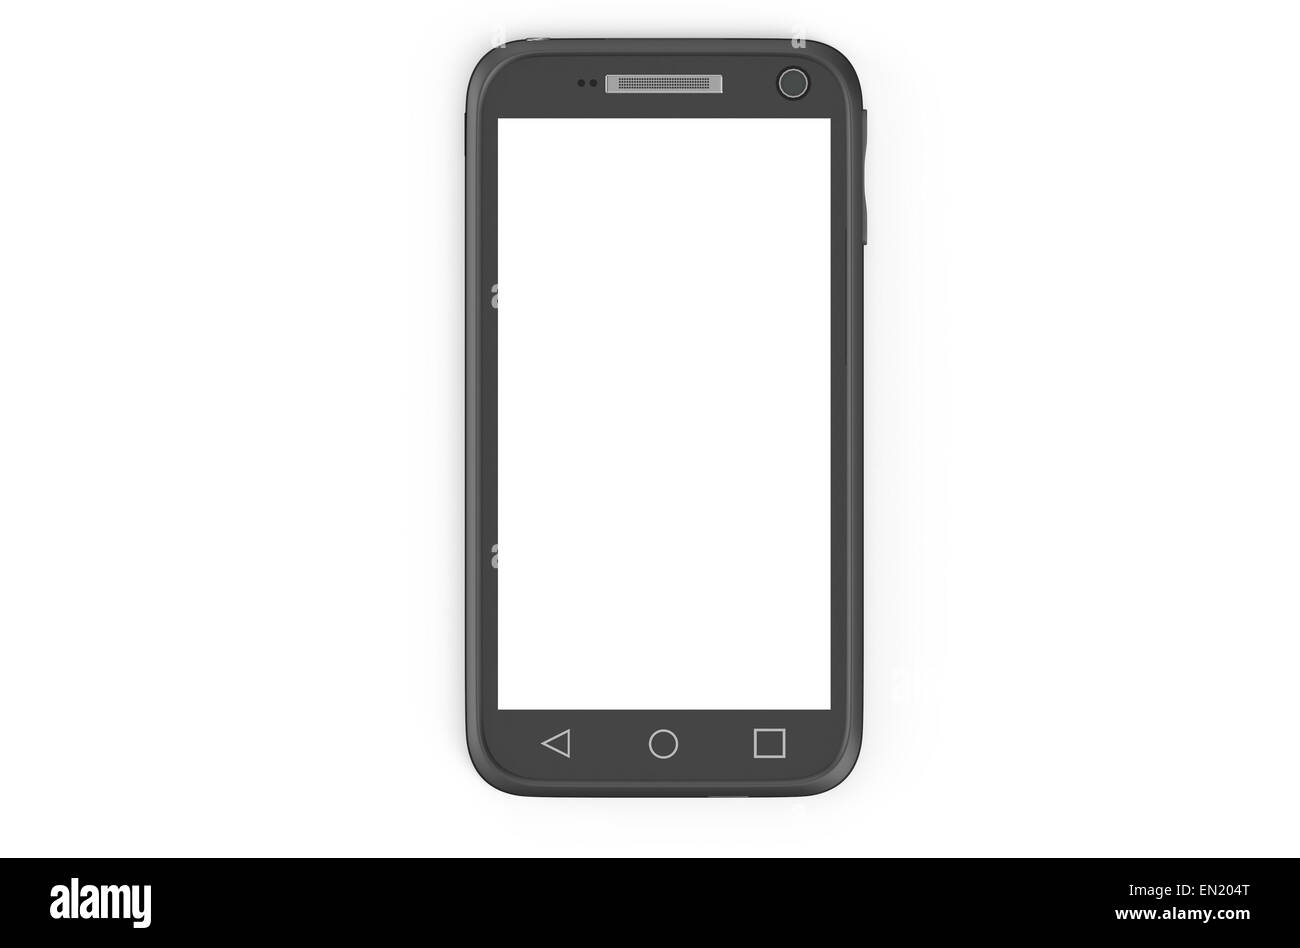 black smartphone isolated on white background Stock Photo